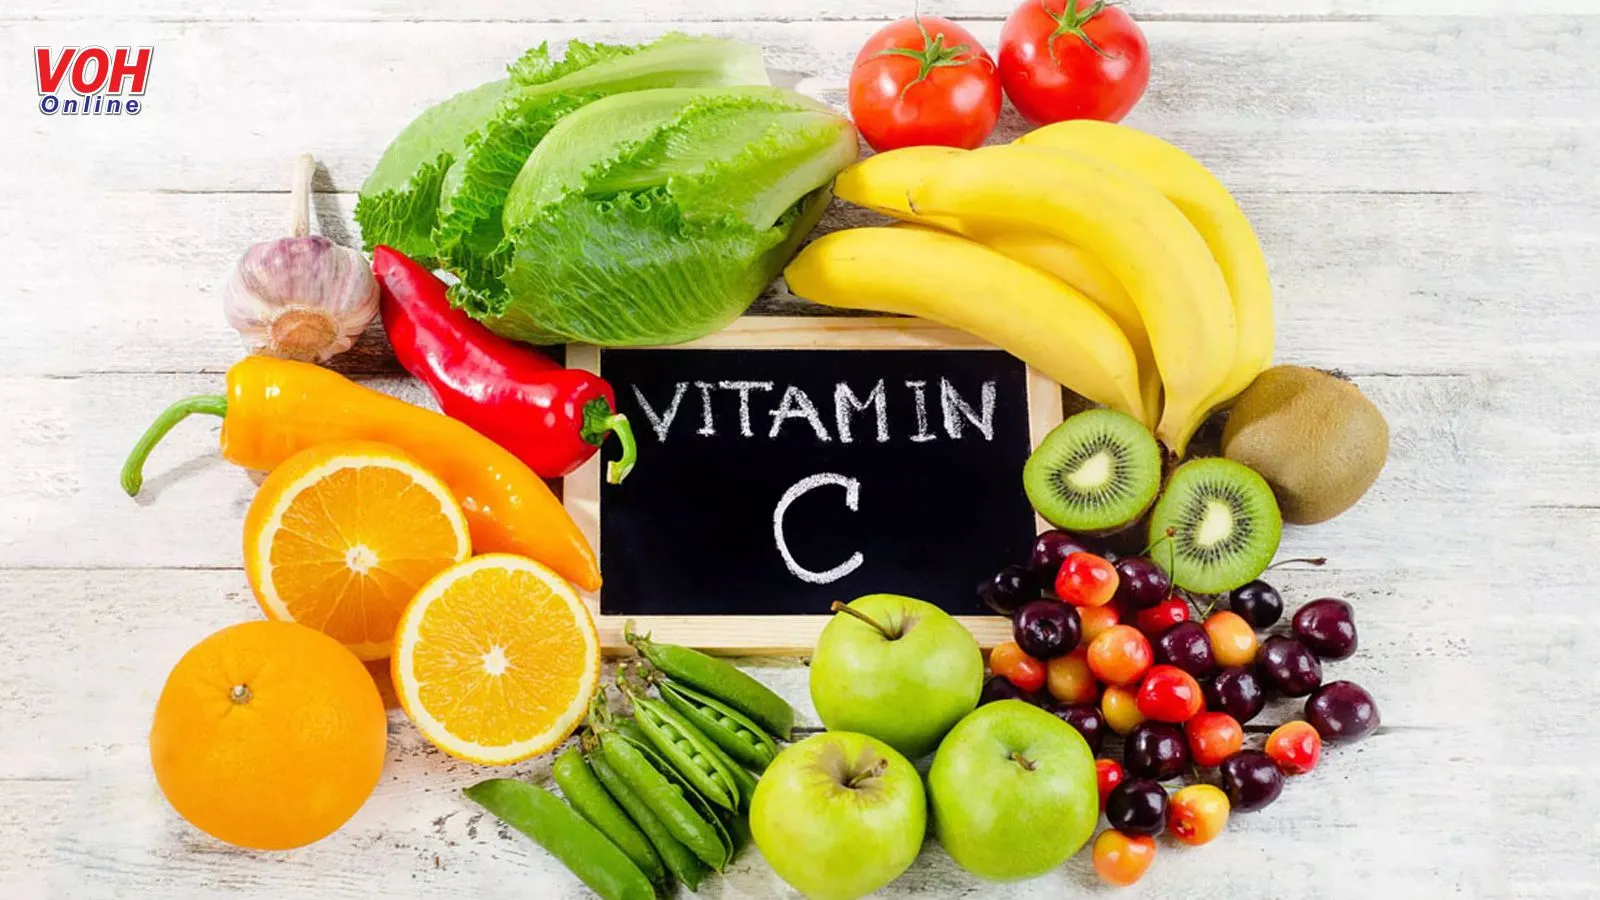 16 thực phẩm giàu vitamin C bạn nên biết và thêm vào thực đơn